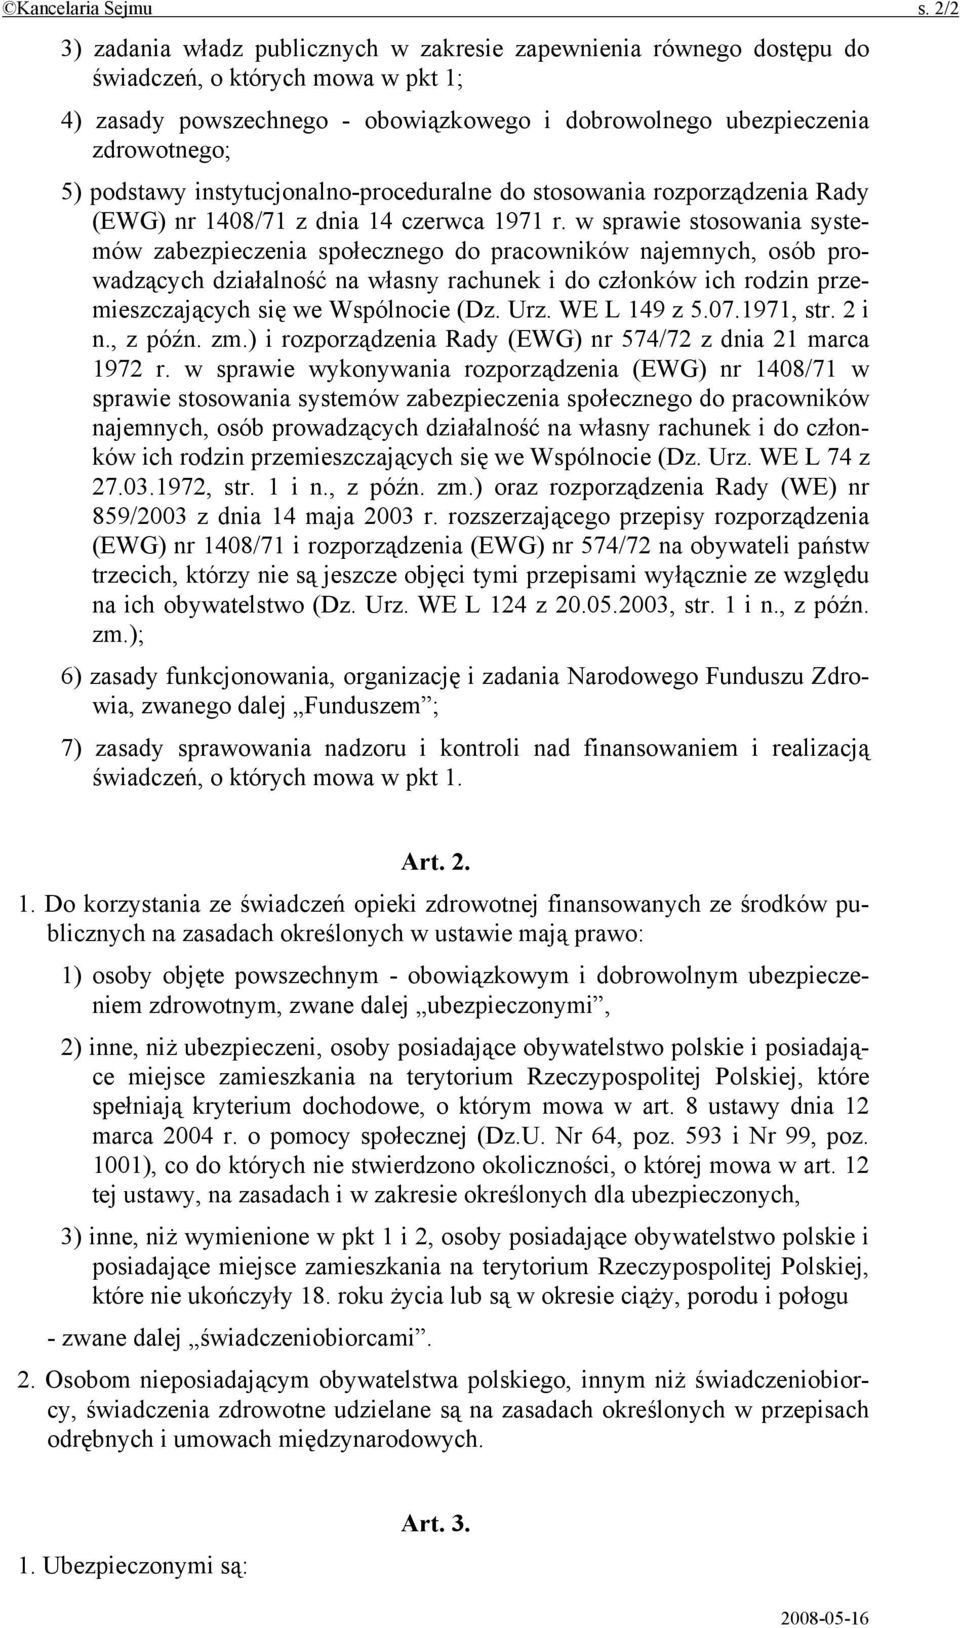 podstawy instytucjonalno-proceduralne do stosowania rozporządzenia Rady (EWG) nr 1408/71 z dnia 14 czerwca 1971 r.